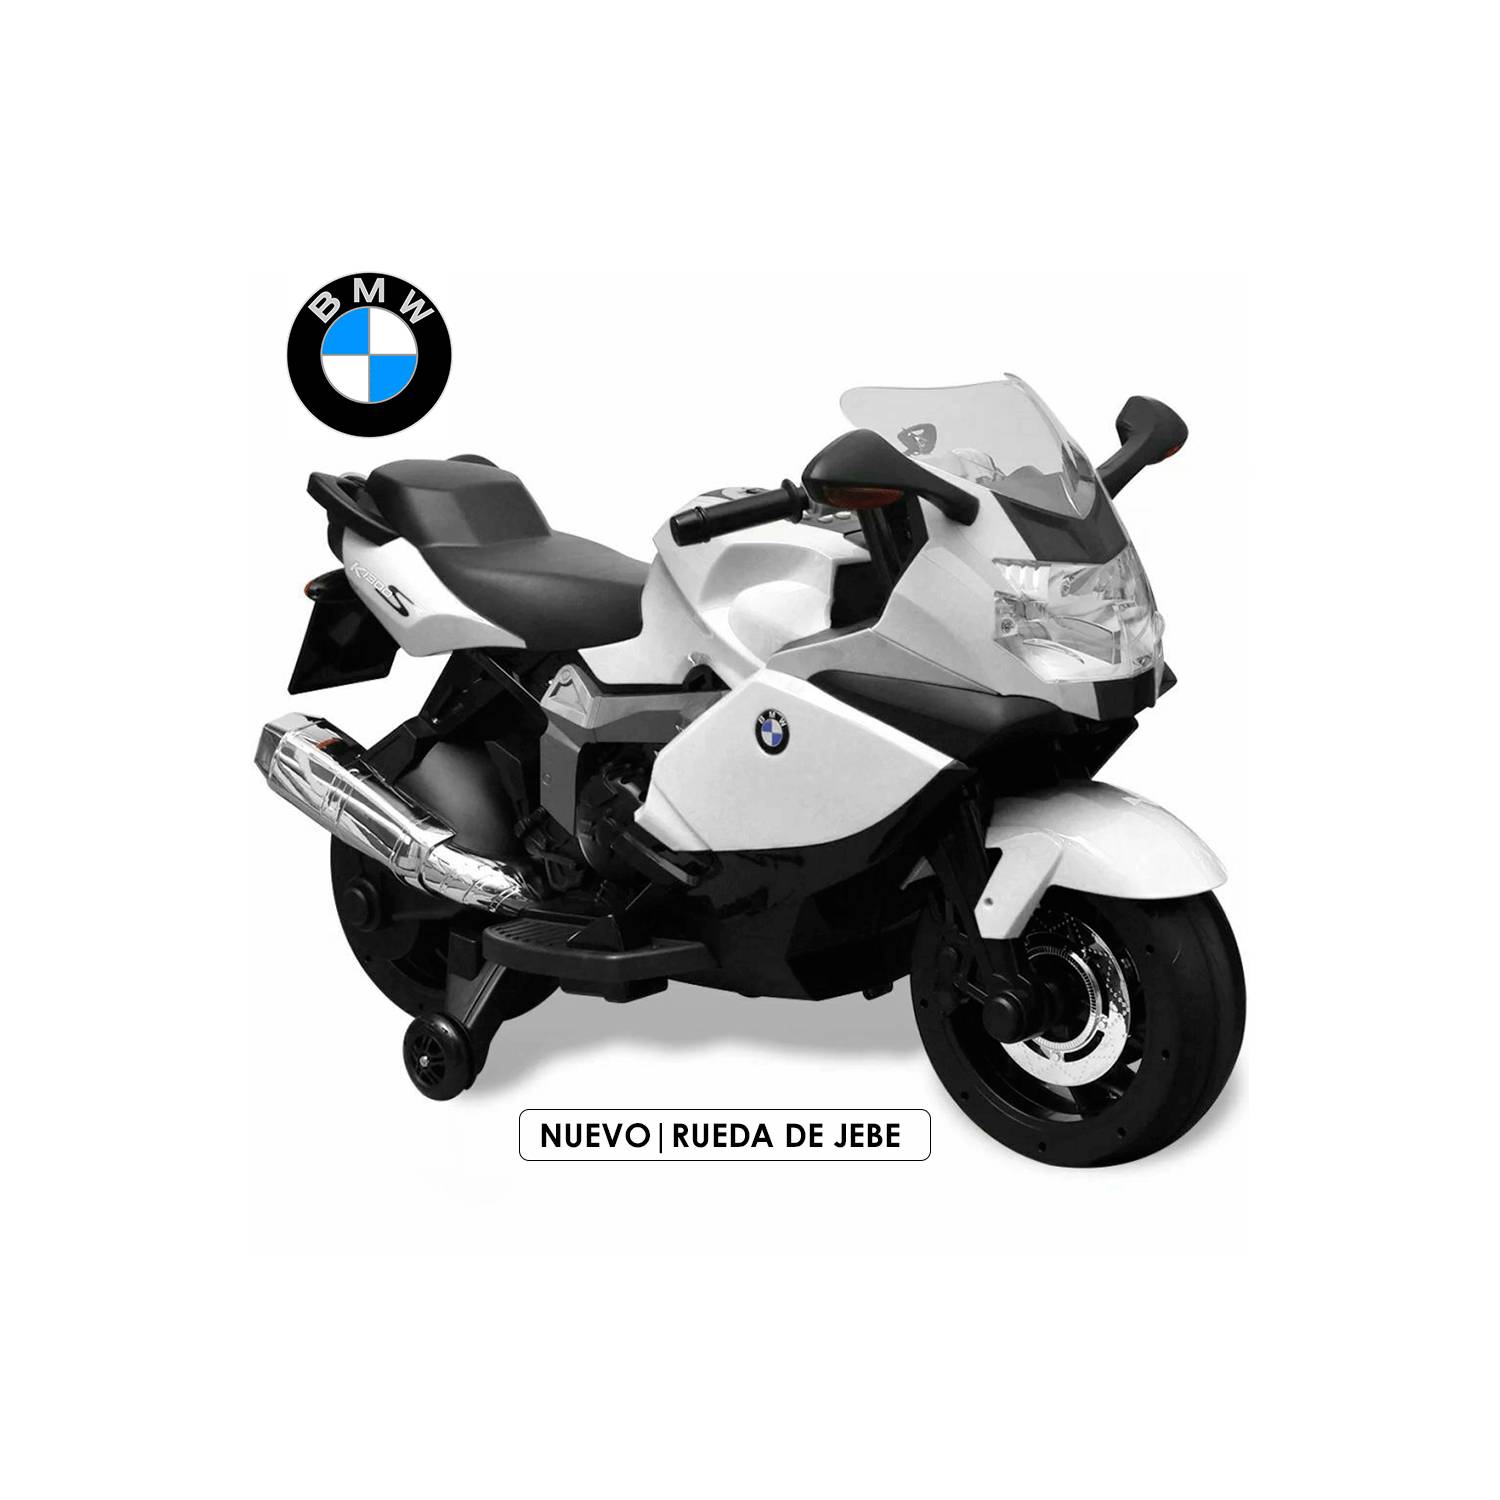 Características moto eléctrica para niños de hasta 7 años BMW k1300 S 12v 